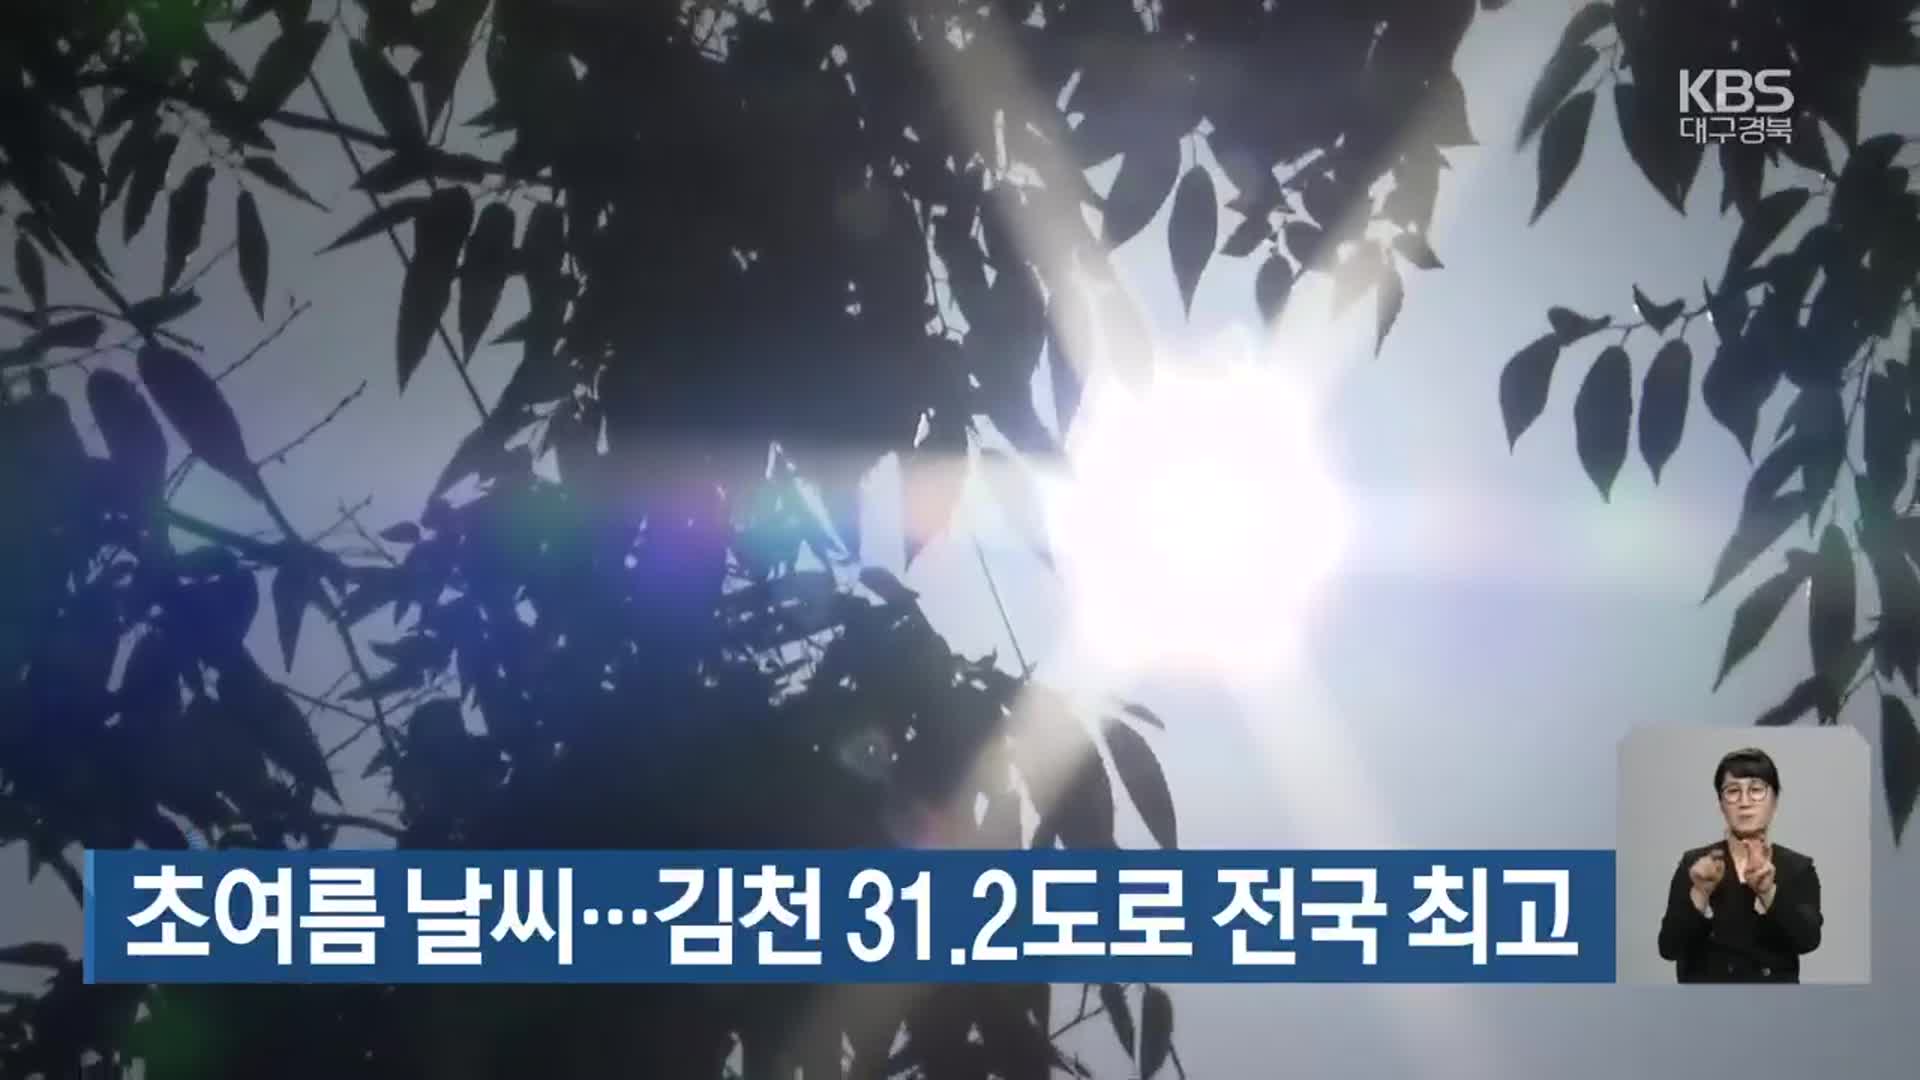 초여름 날씨…김천 31.2도로 전국 최고